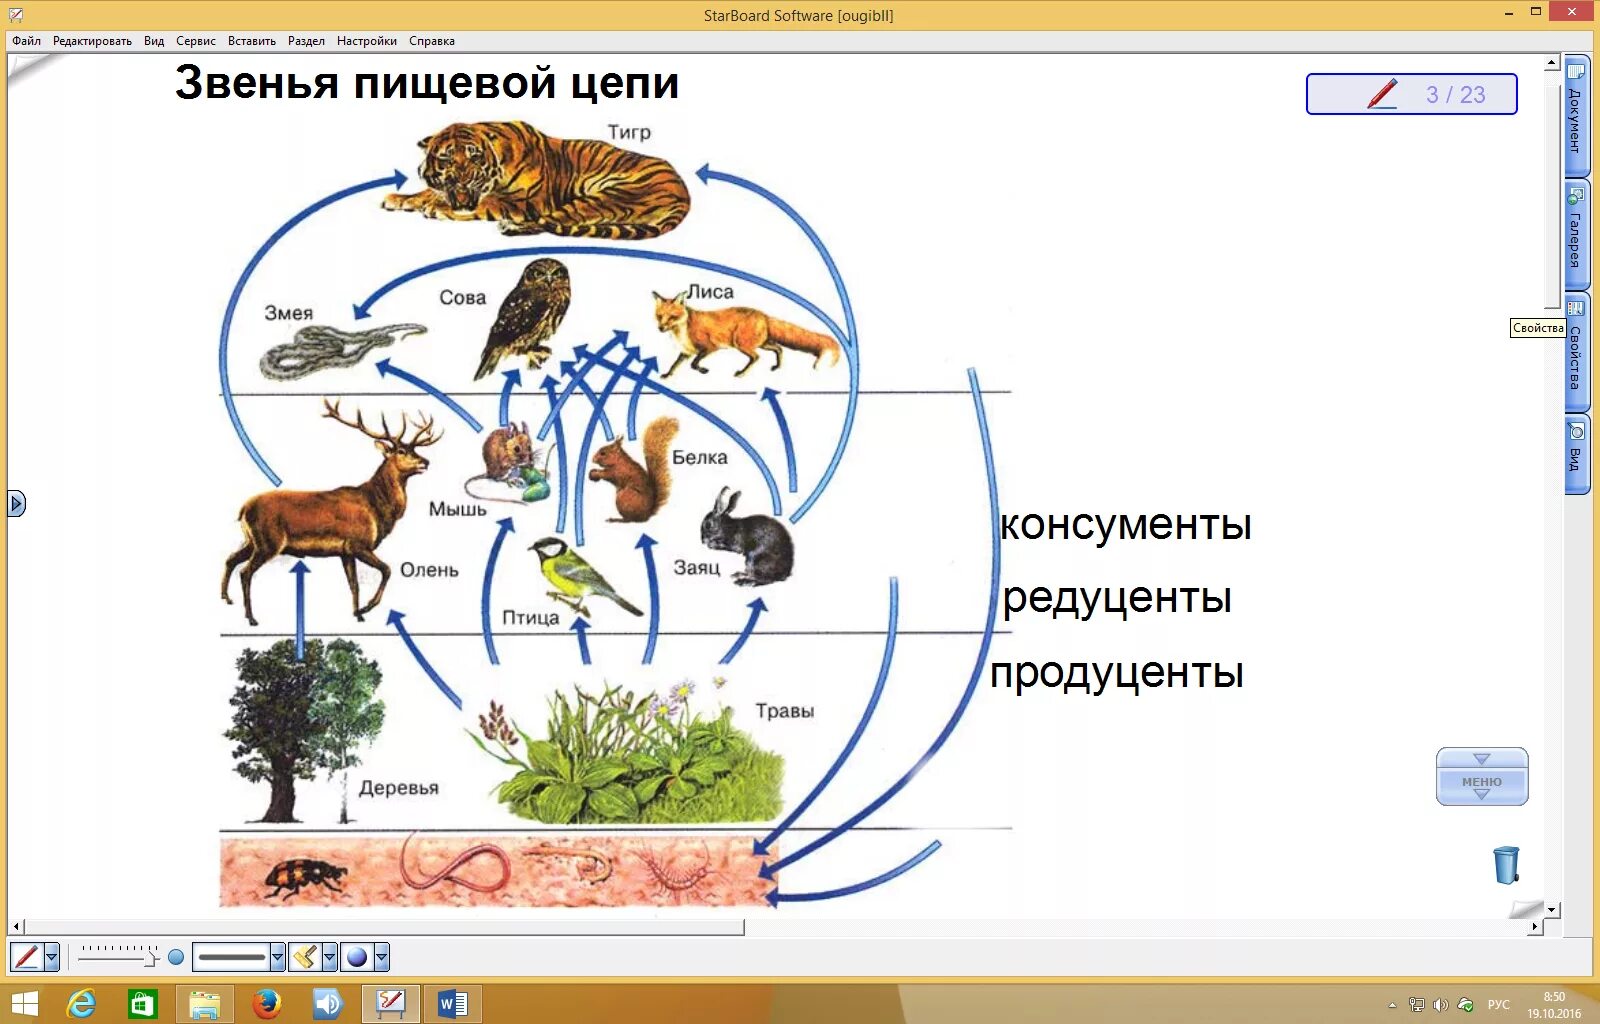 Приведи пример пищевых связей аквариума. Пищевая сеть схема биология. Пищевая сеть 5 класс биология. Пищевая сеть Луга схема. Пищевая сеть сообщества 5 класс биология.